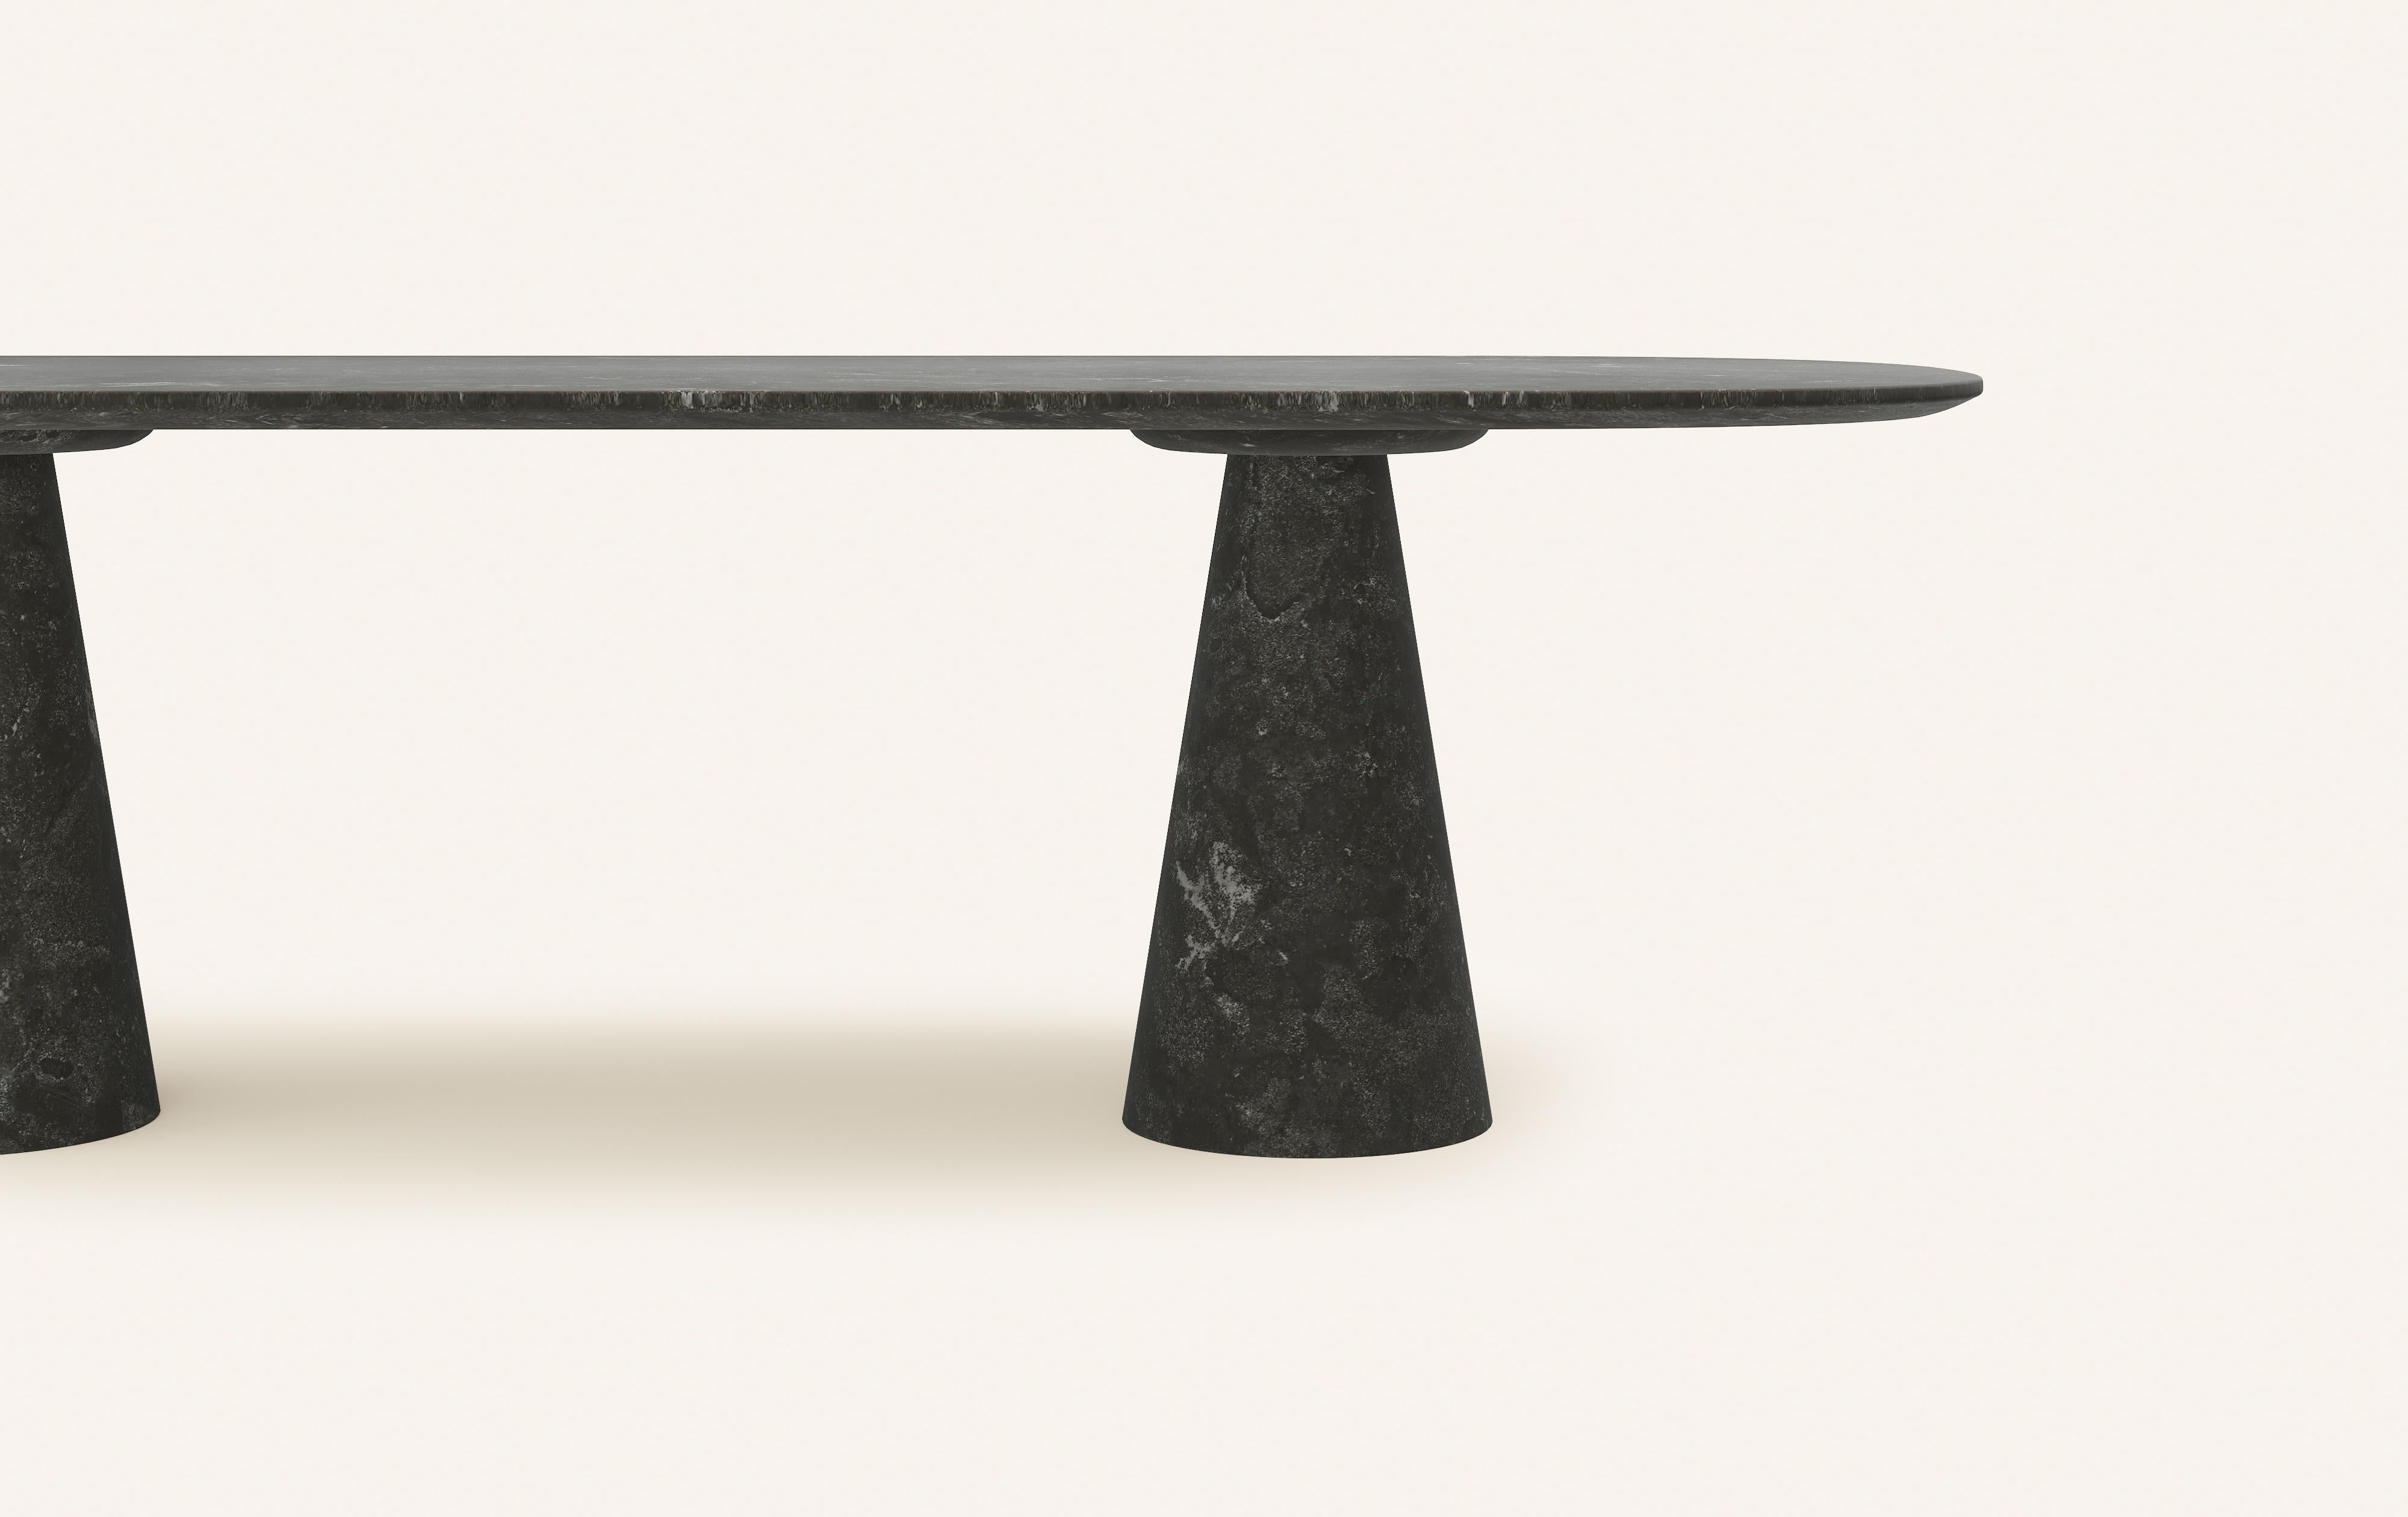 American FORM(LA) Cono Oval Dining Table 84”L x 42”W x 30”H Nero Petite Granite For Sale